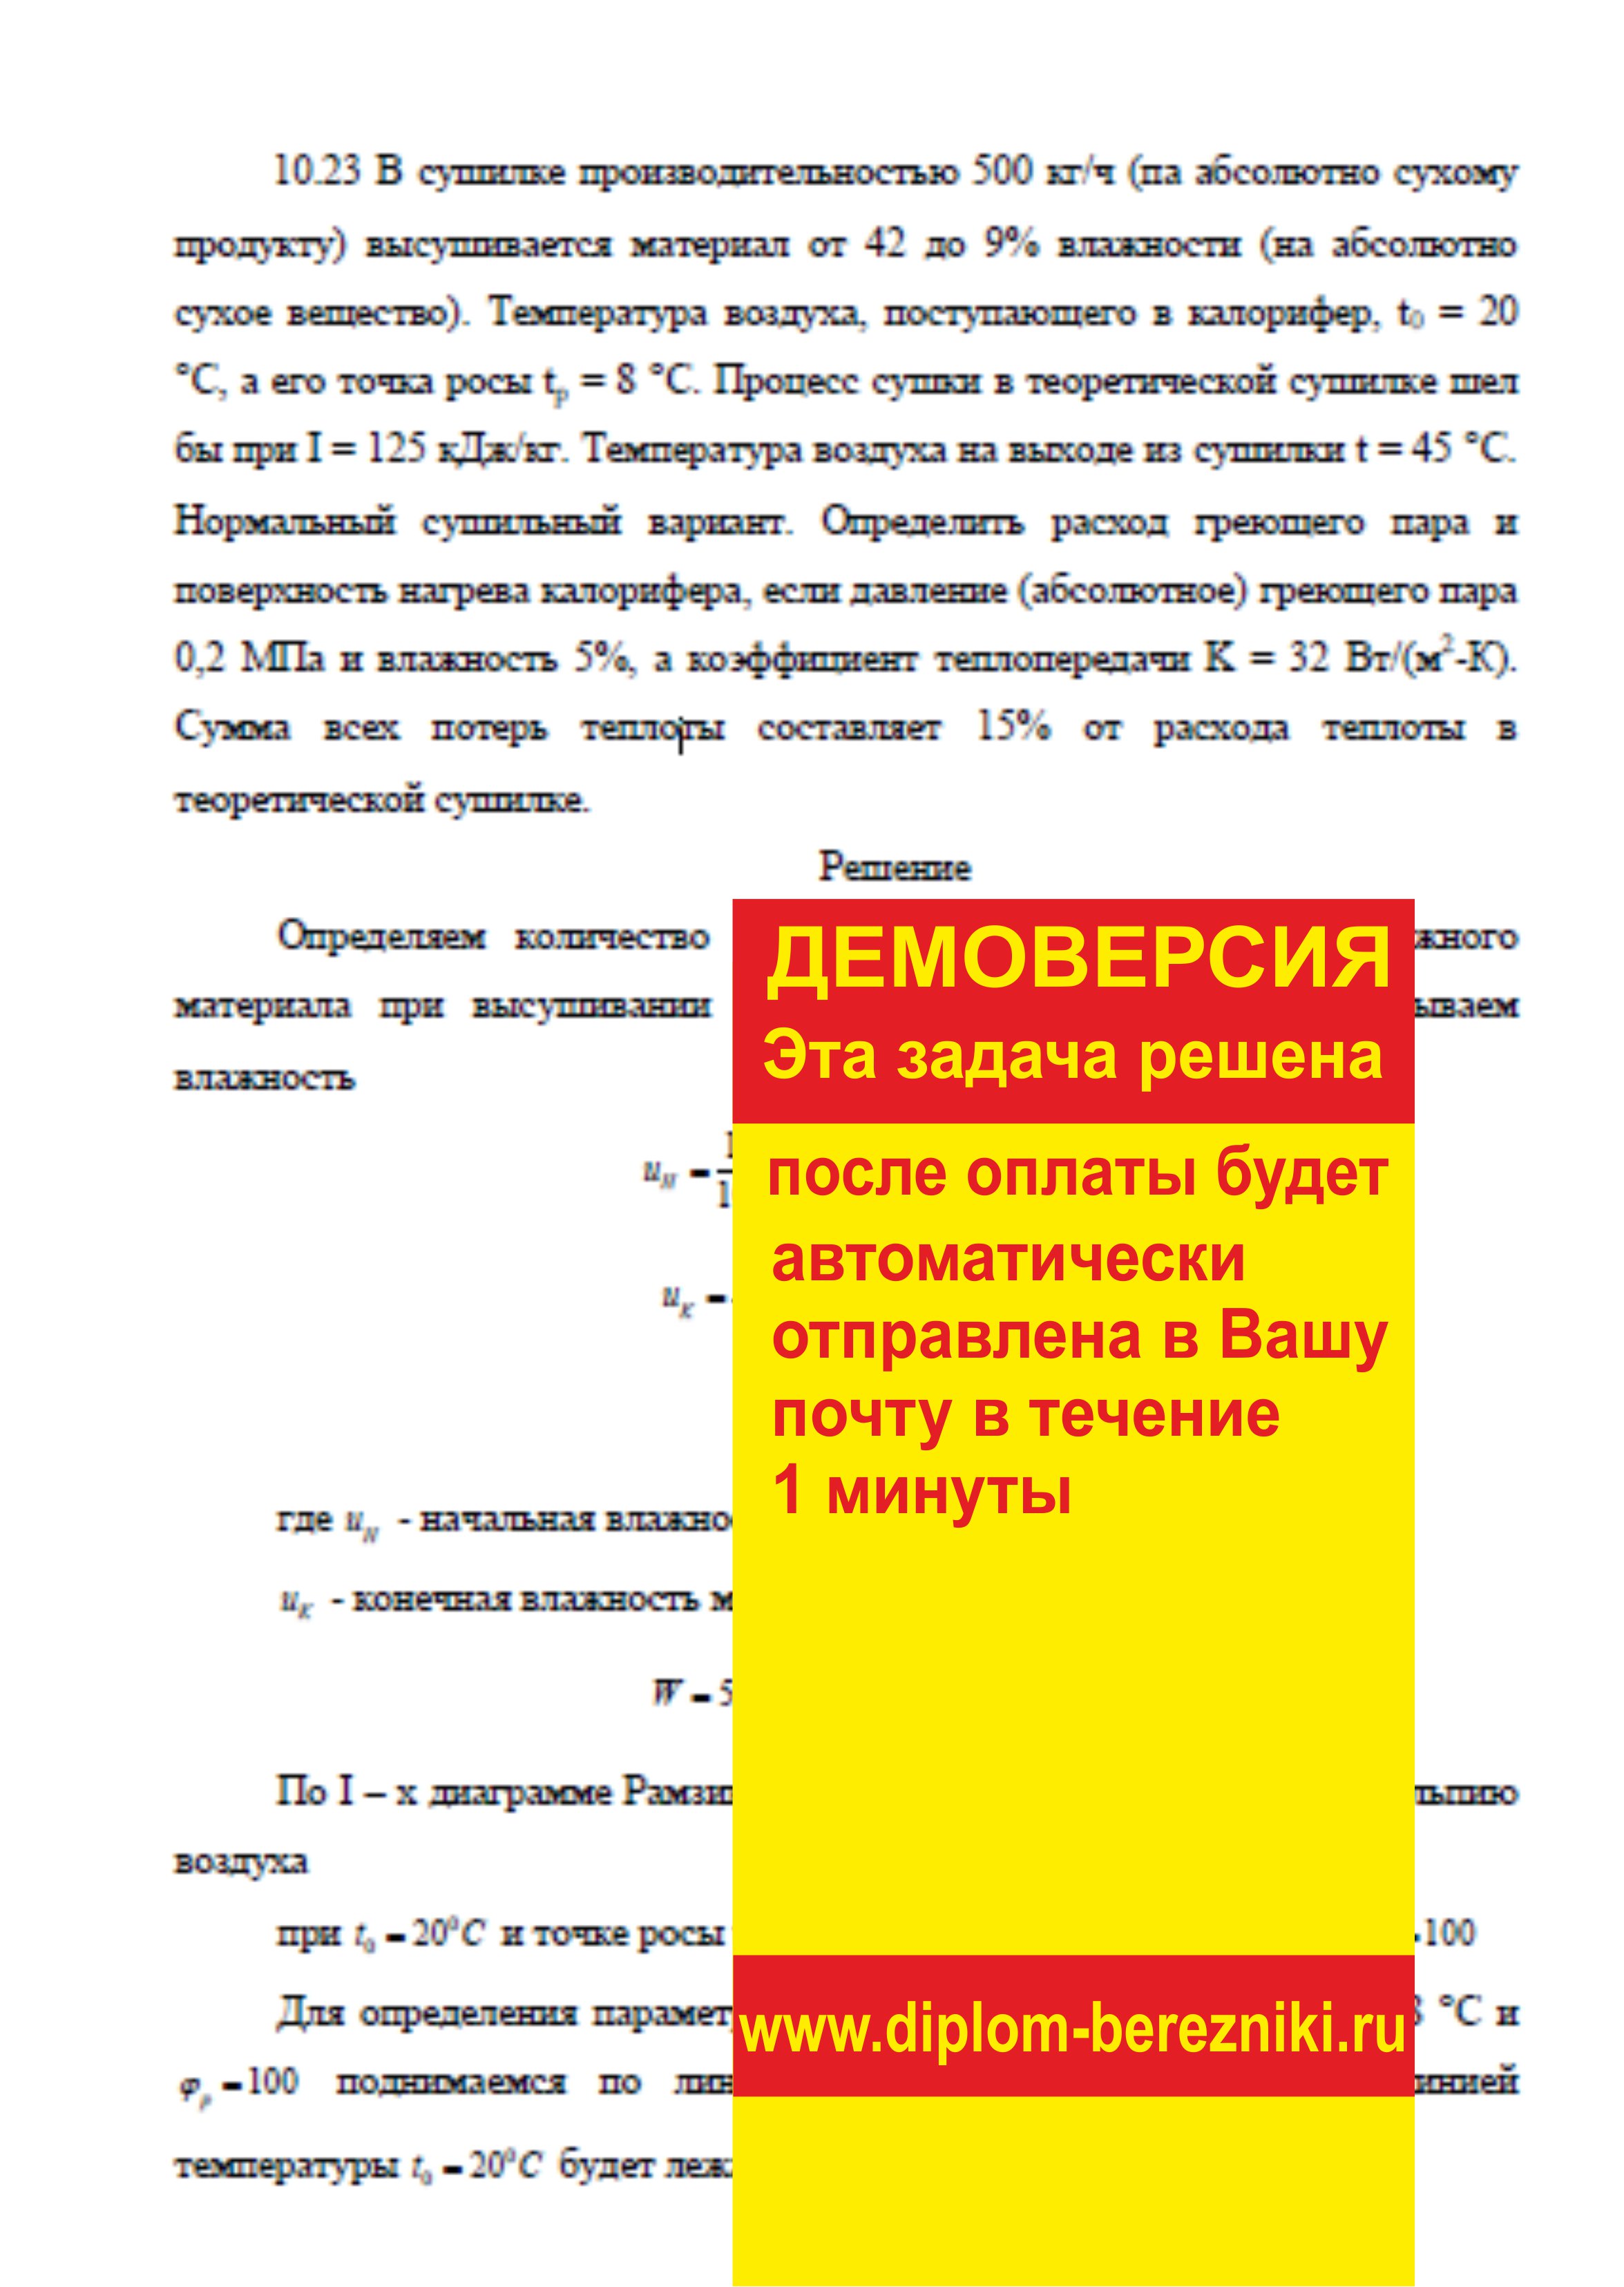 Решение задачи 10.23 по ПАХТ из задачника Павлова Романкова Носкова